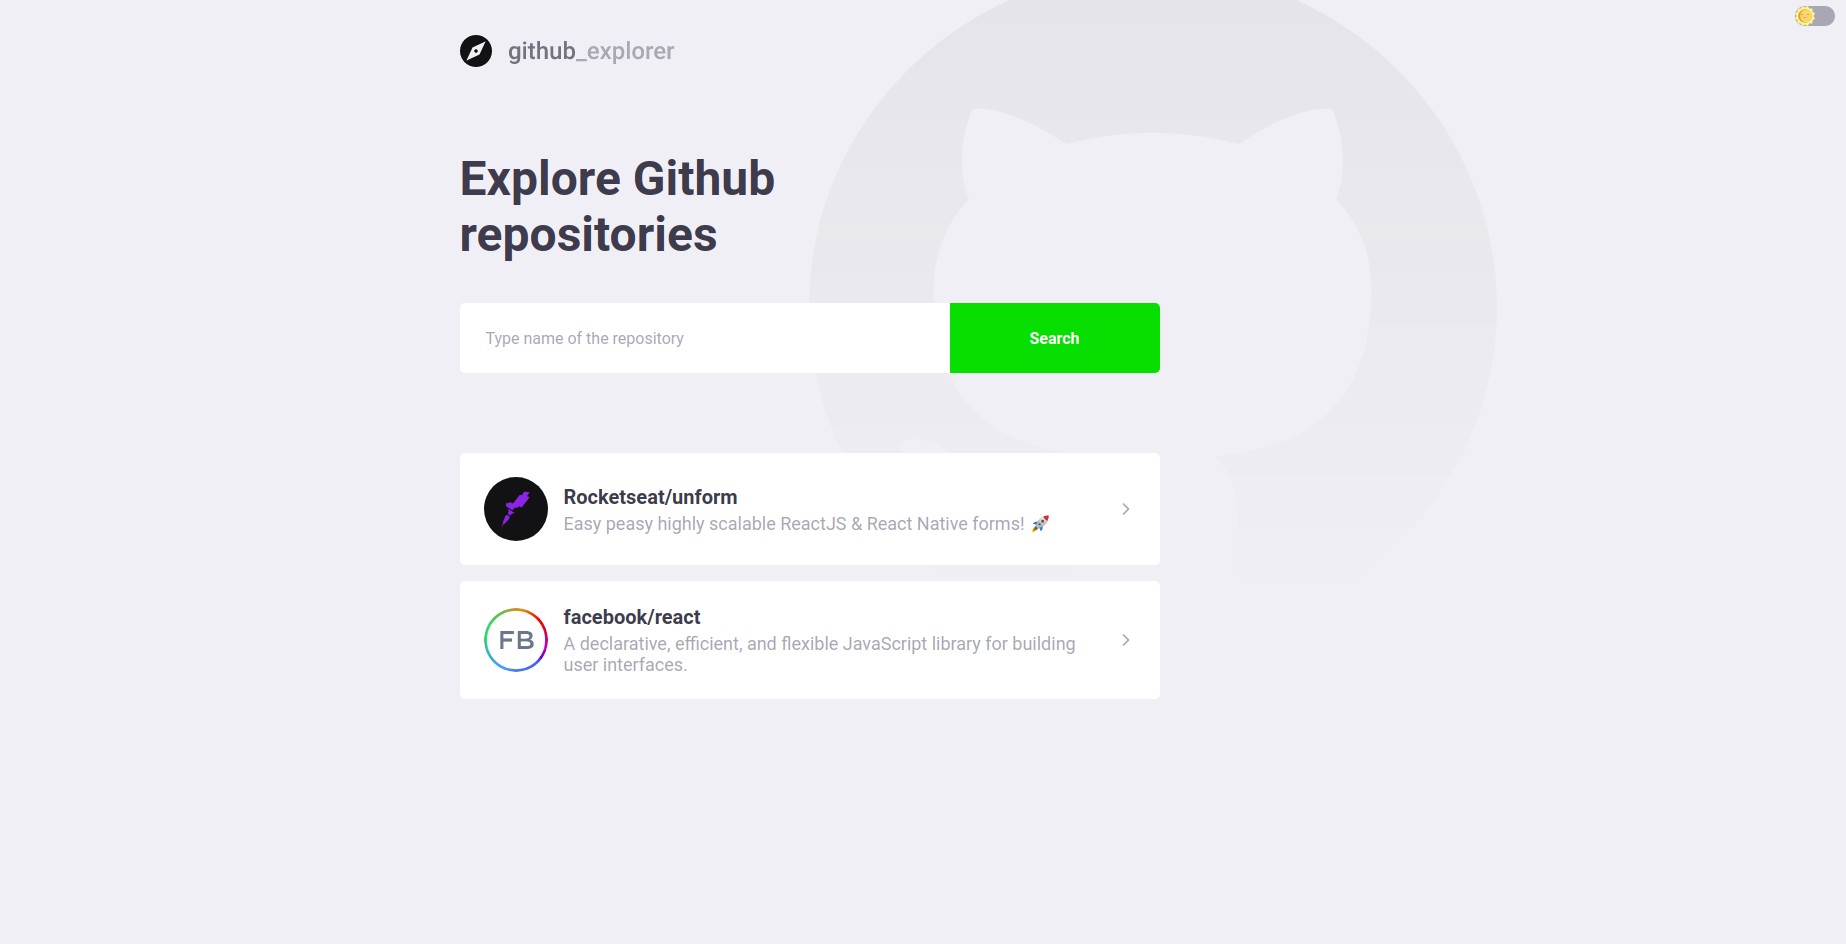 Github Explorer